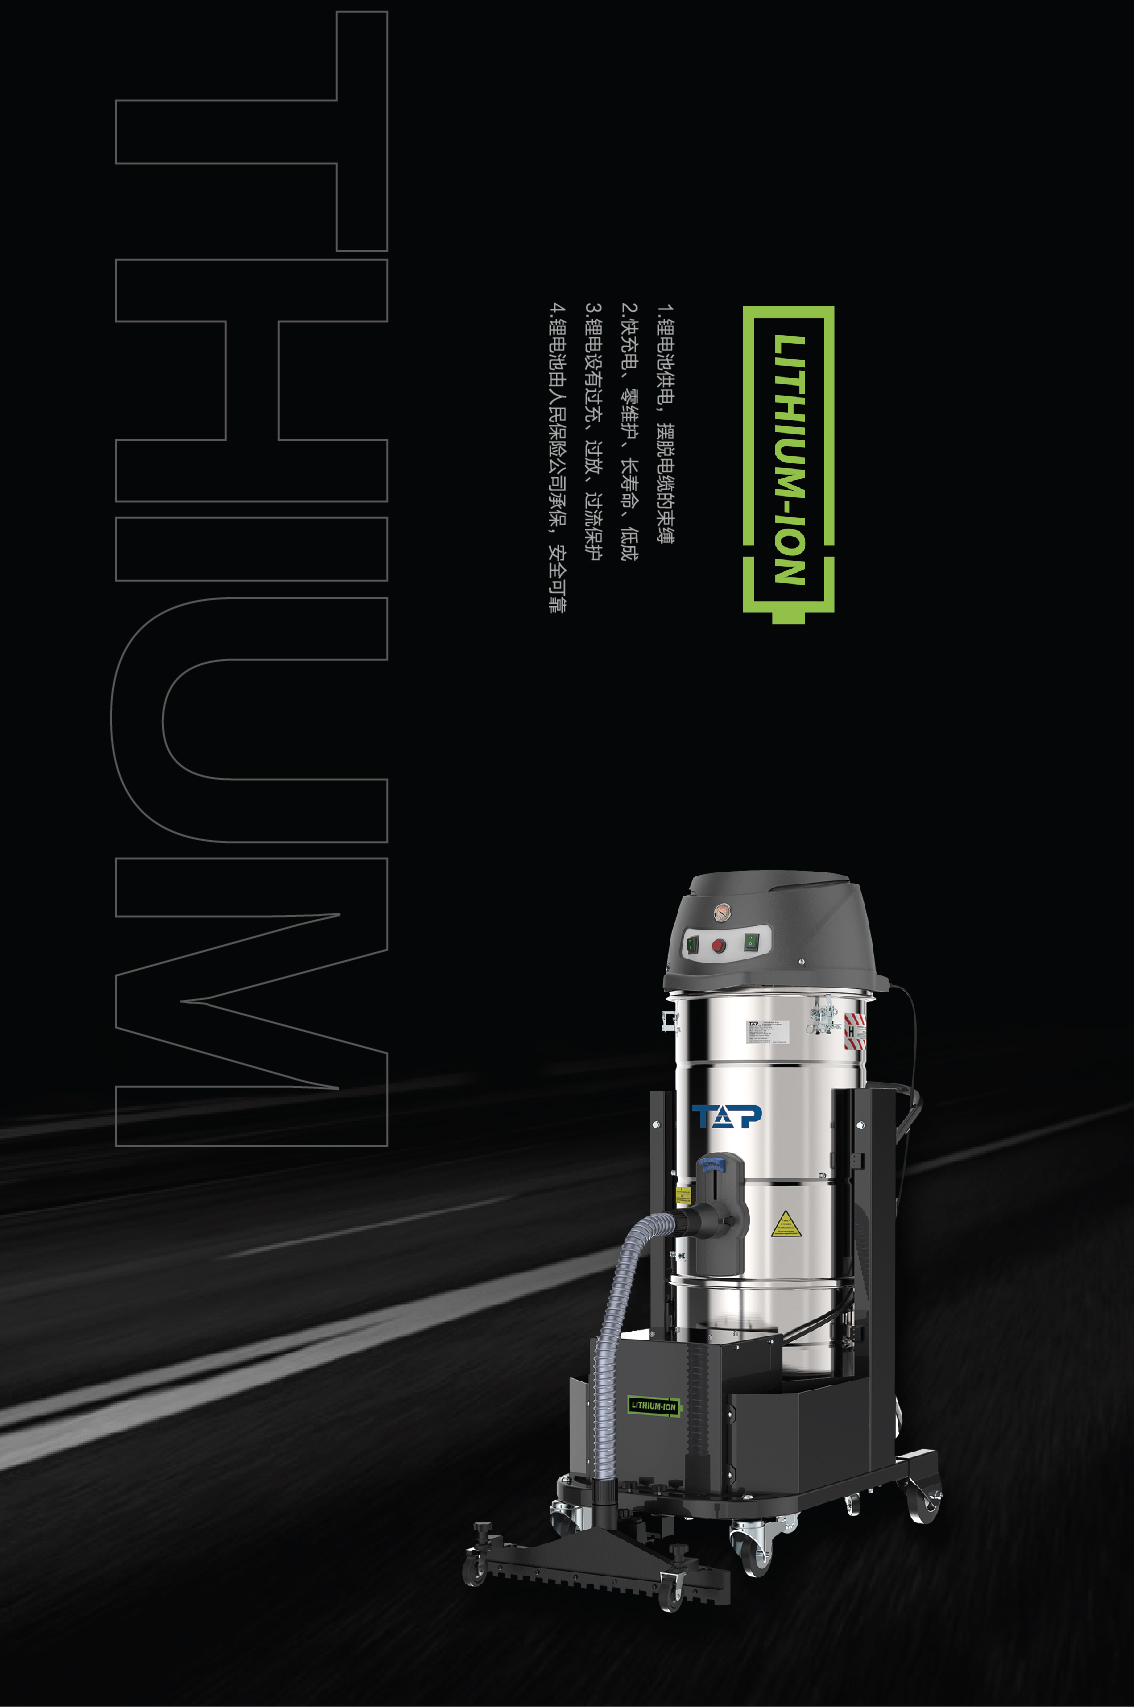 官宣：TNE3系列工业吸尘器---新品发布!